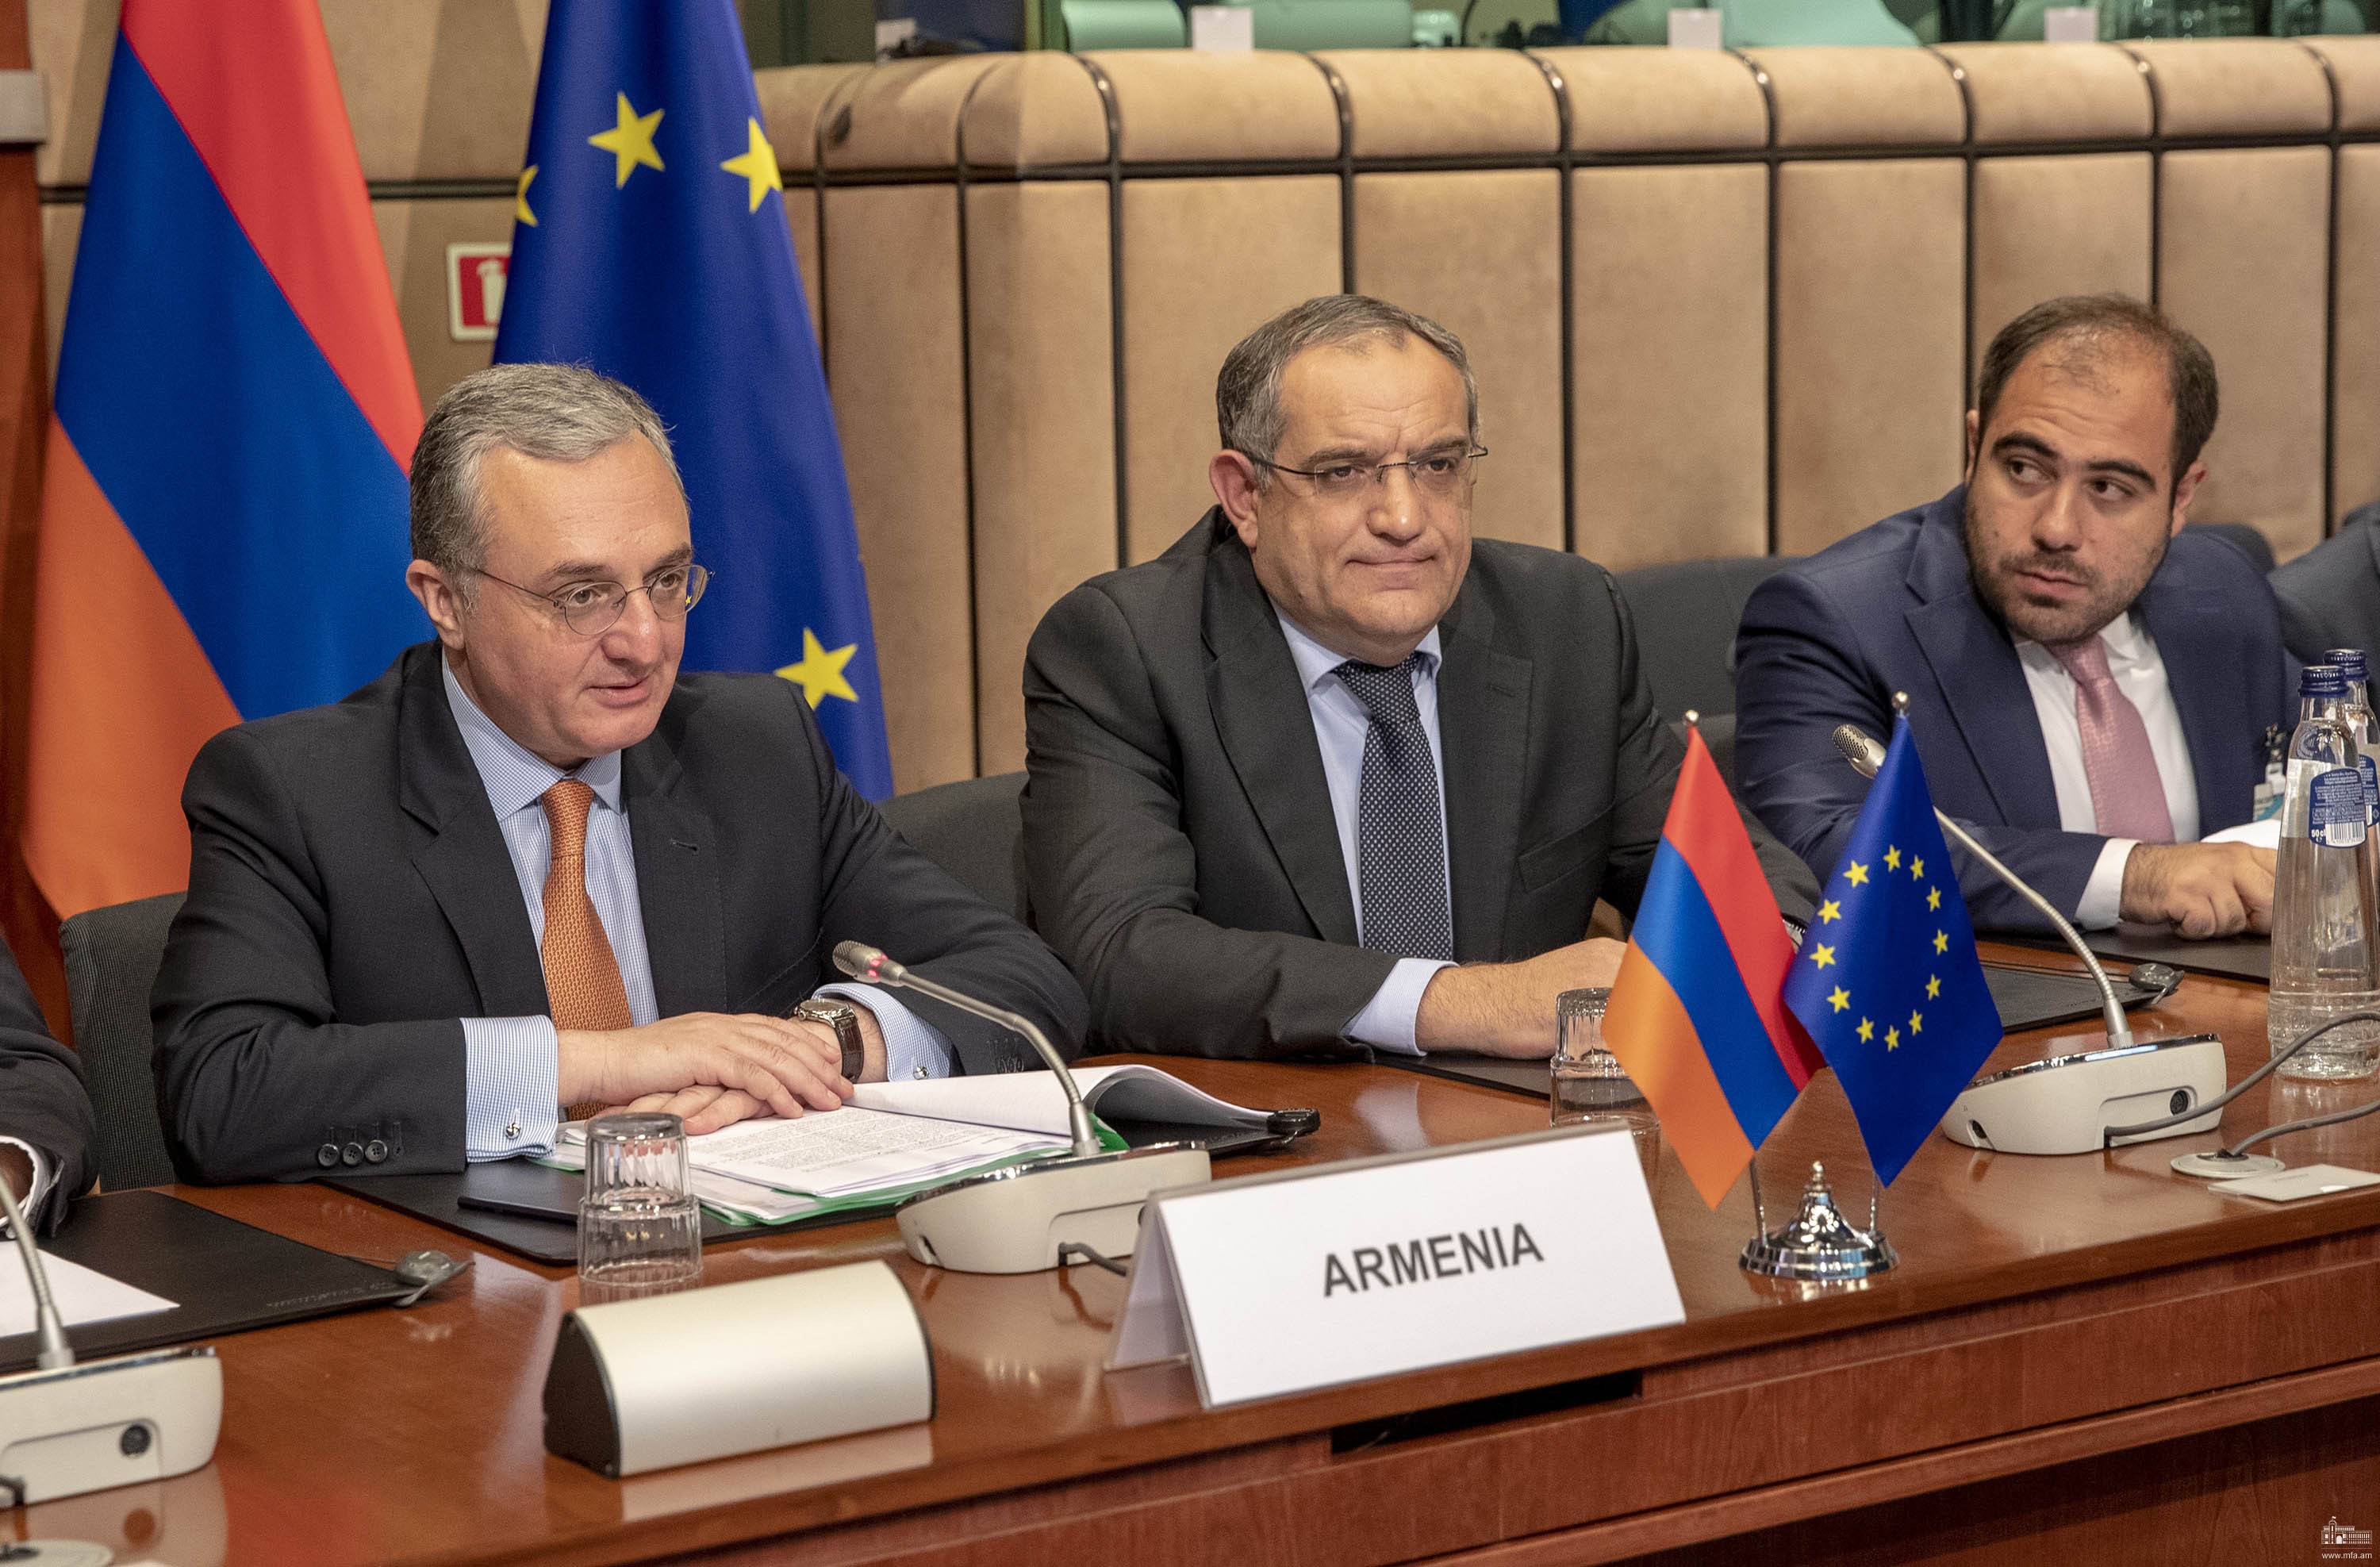 ԵՄ-ն հավելյալ 25 միլիոն եվրո կհատկացնի Հայաստանին 2019 թվականին